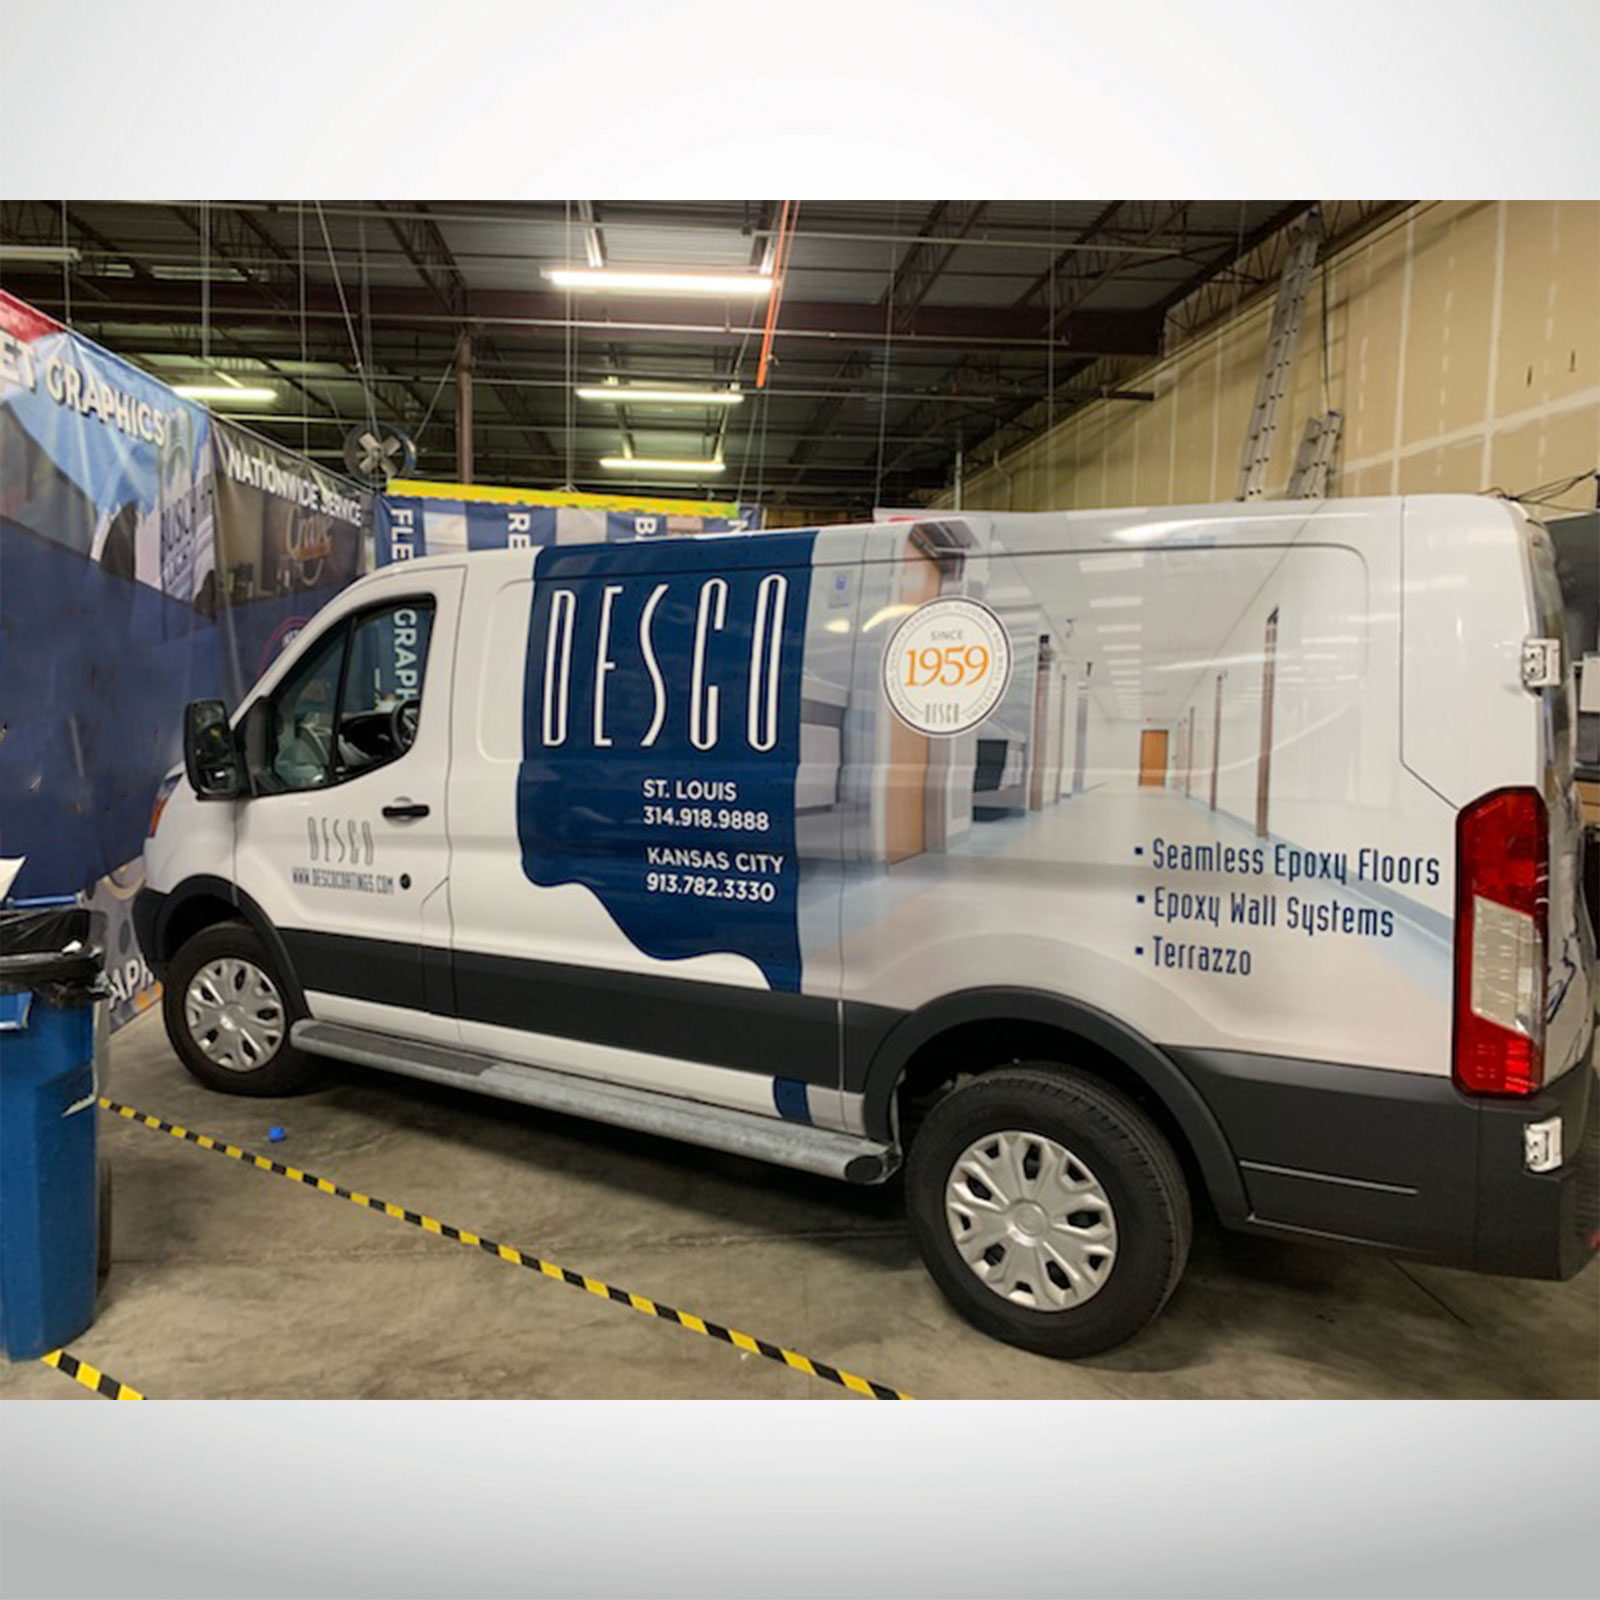 Desco Coatings Vehicle Wrap on Fleet Vehicle